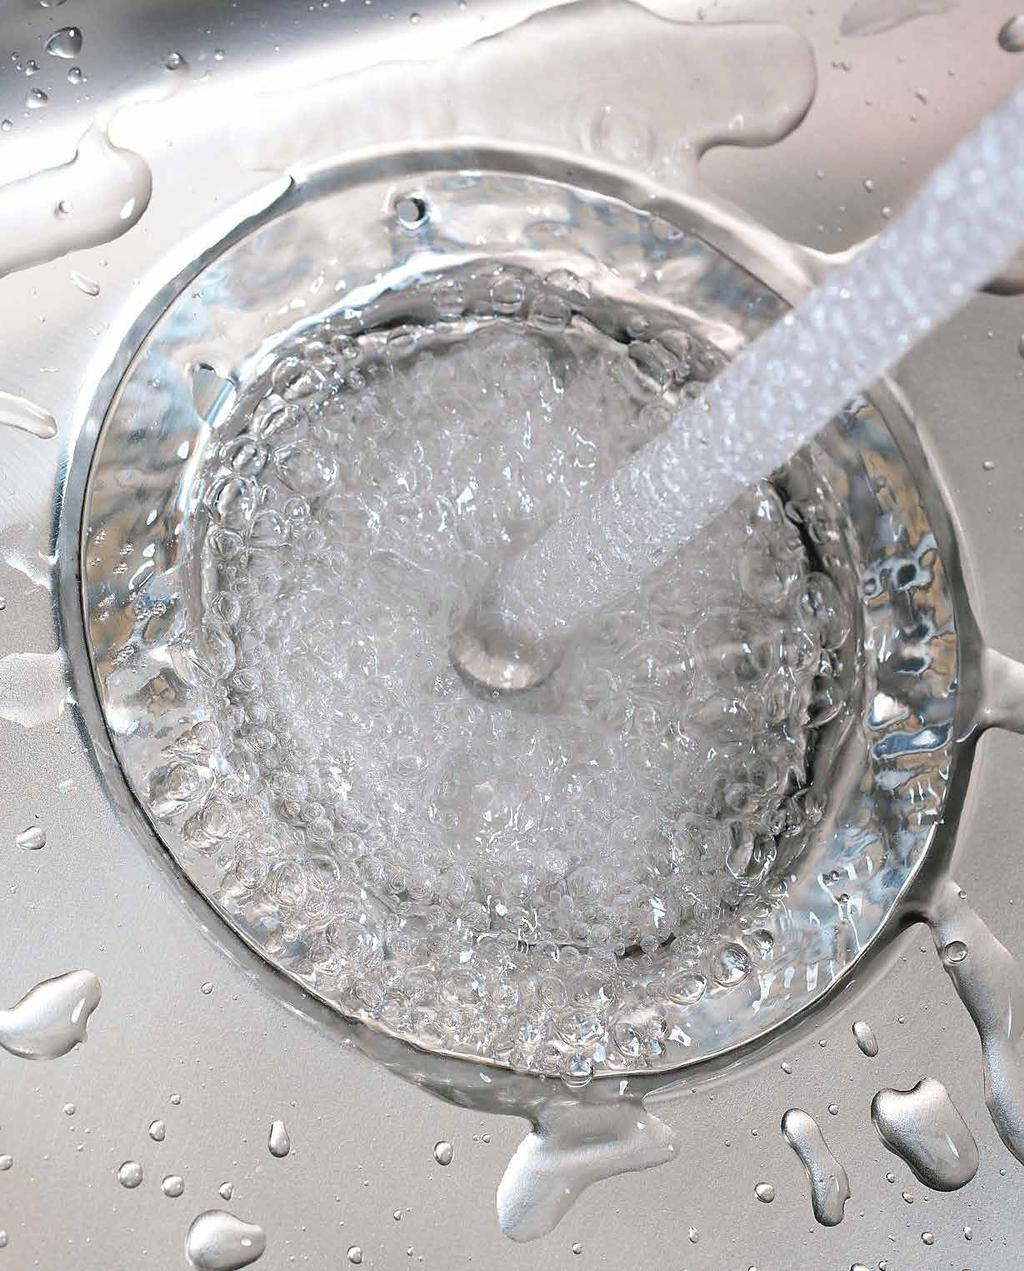 SKÖTSELANVISNING MONARCH COLLECTION 3 Undvik kontakt med rengöringsmedel som innehåller natriumhydroxid (t.ex. kaustiksoda och ugnsrengöring), skölj alltid med rent vatten efteråt.